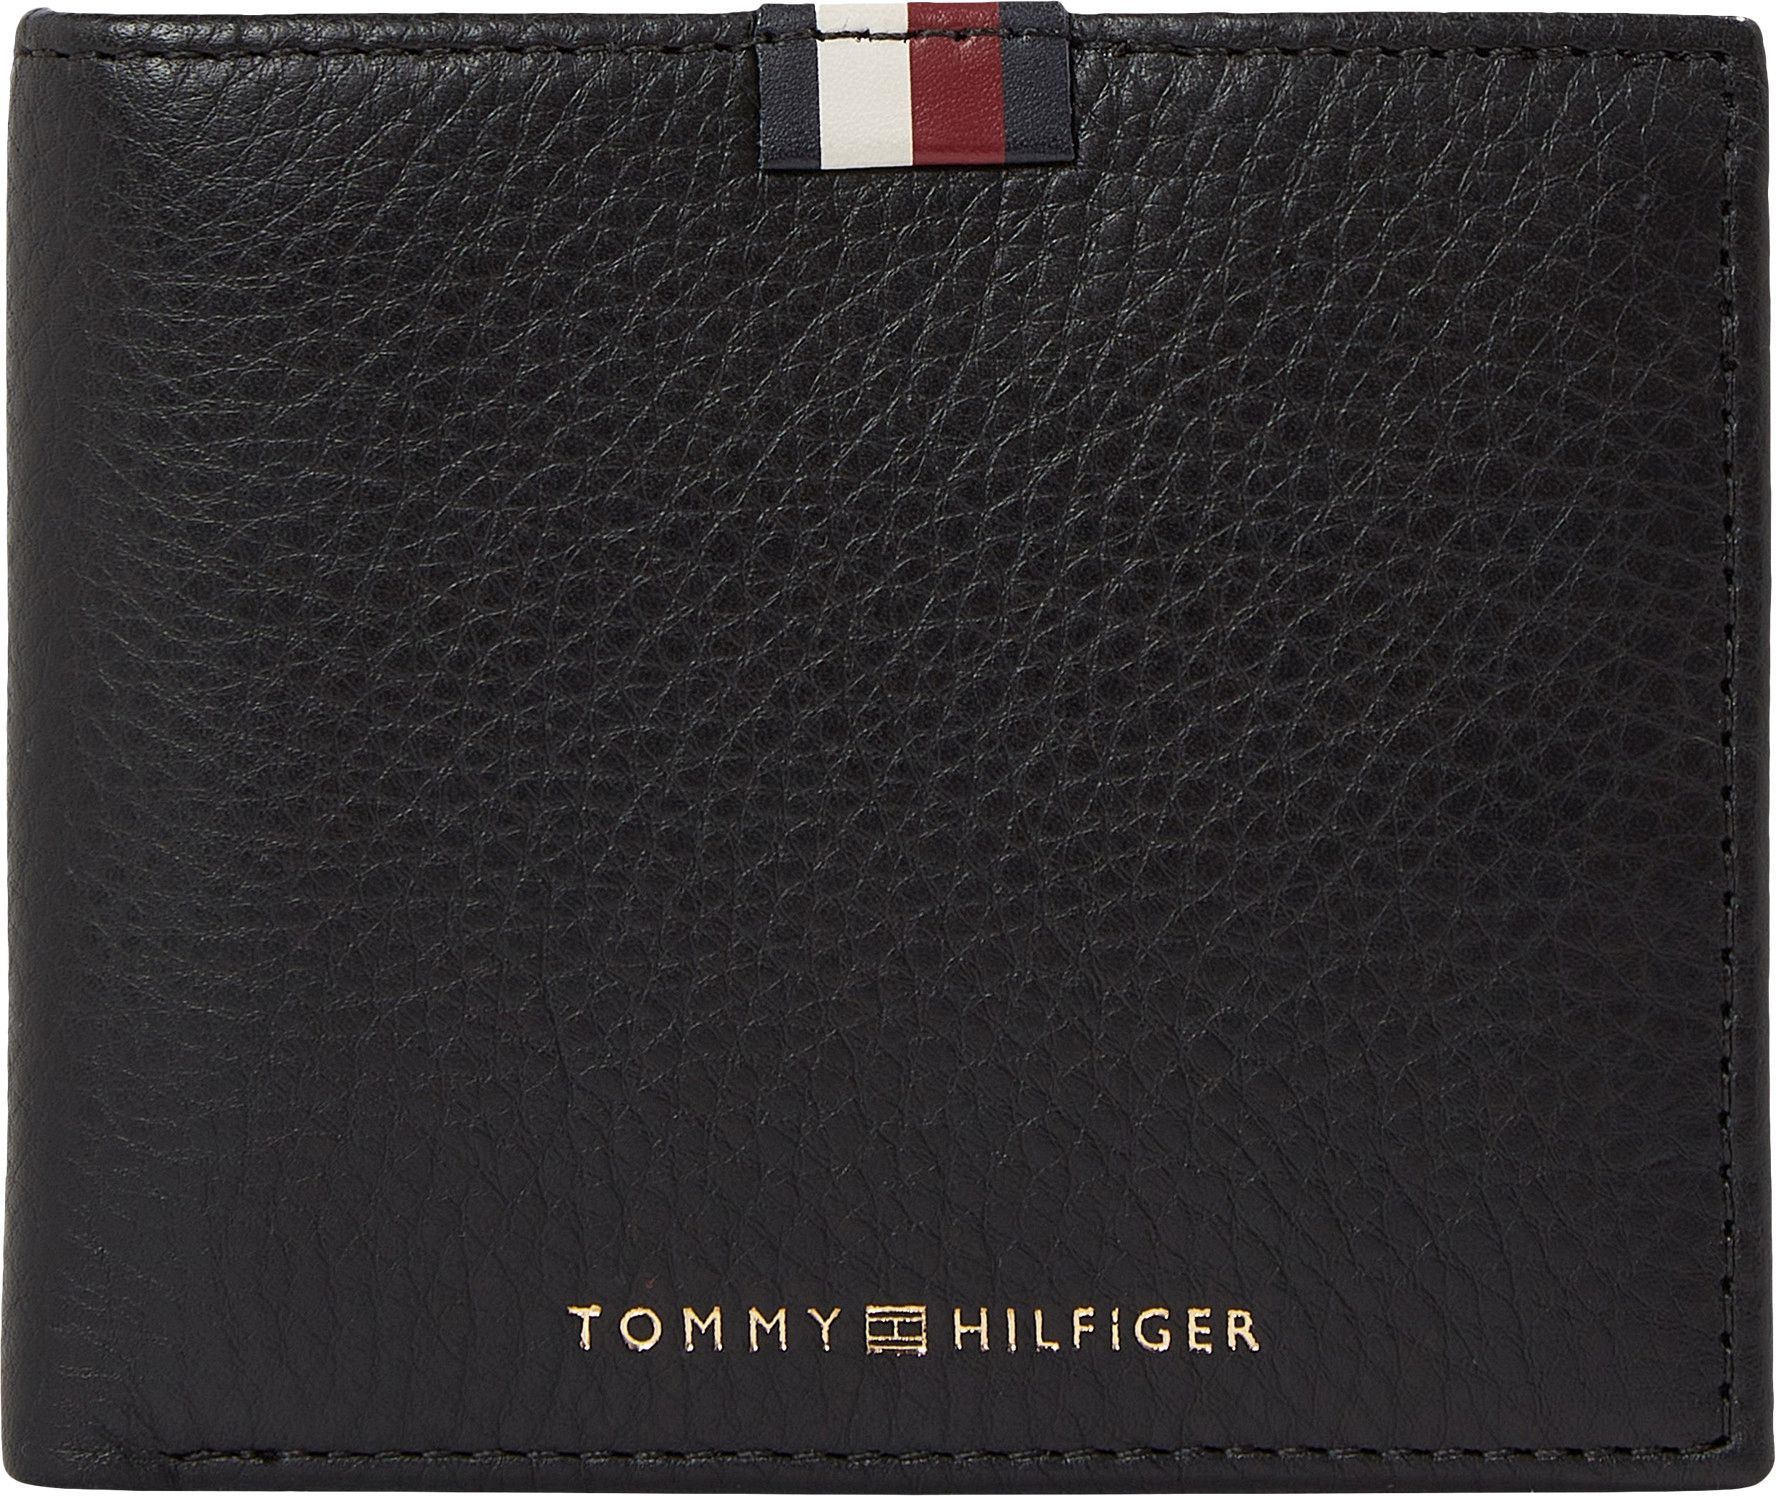 Flap Premium Coin and Leather CC Hilfiger Tommy Lederbörse Black